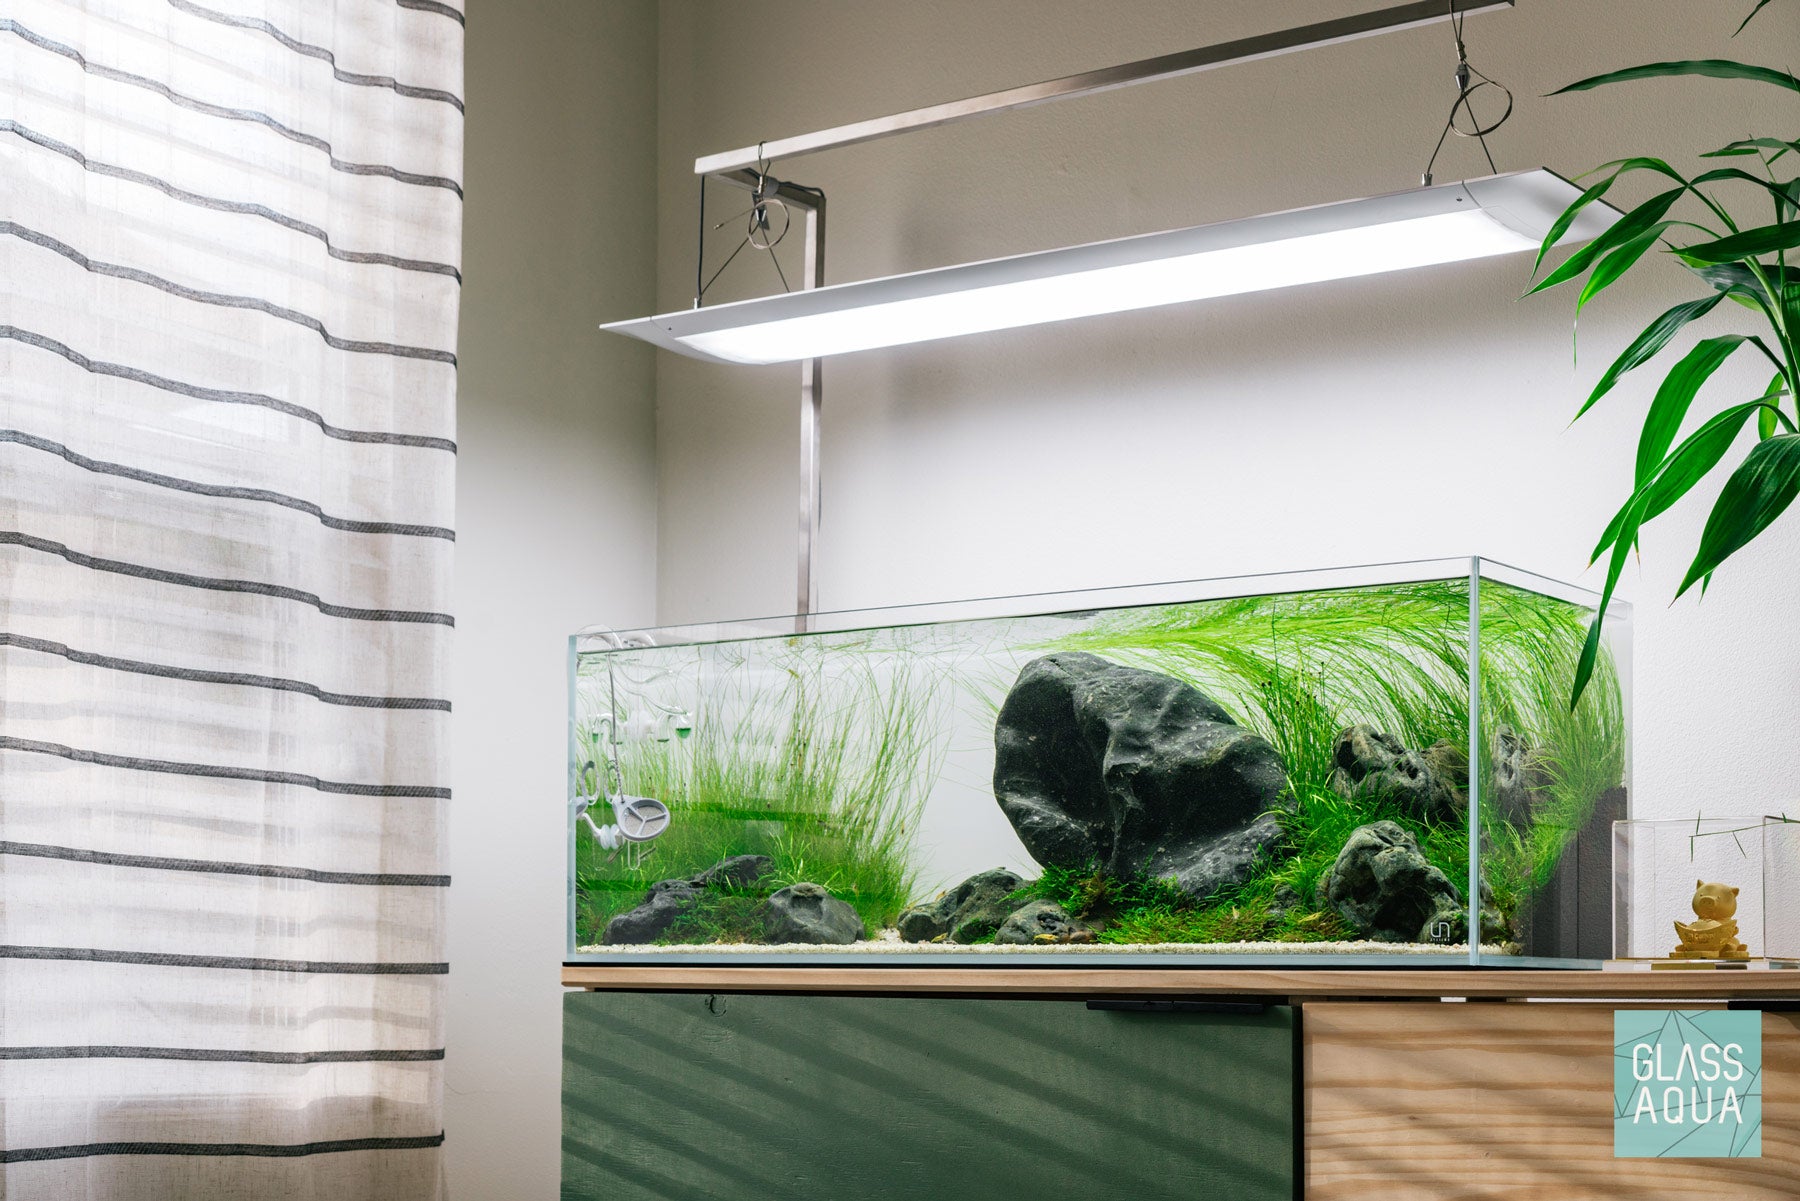 Glass Aqua Planted Aquarium Tank UNS Ultum Nature Systems 90L 20 Gallon Long